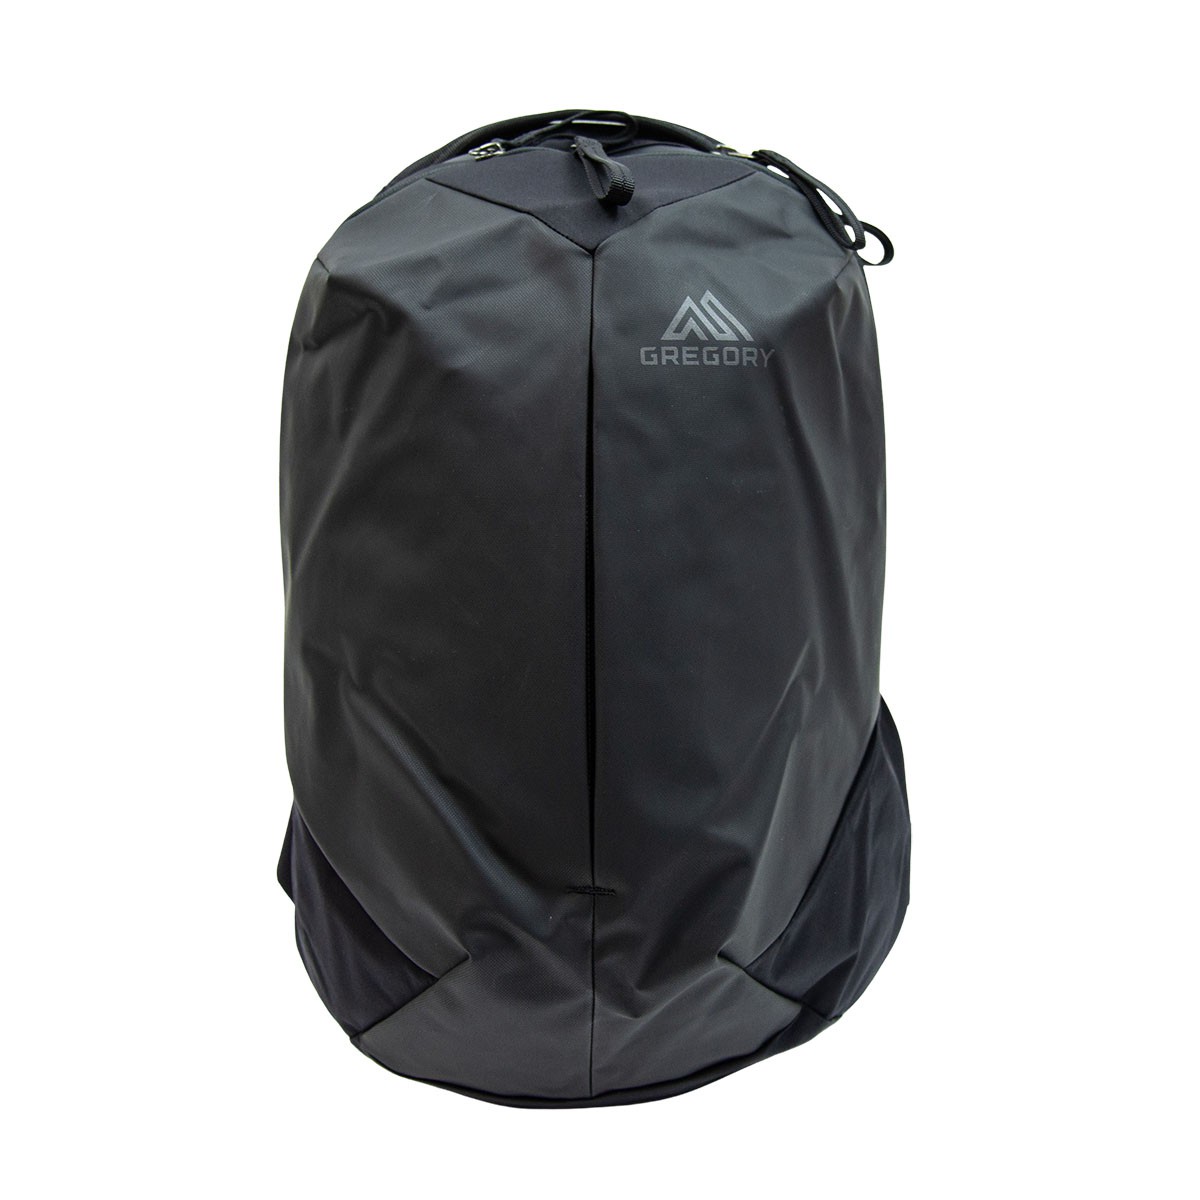 Gregory Sketch 22 UR Backpack 背囊 背包 可放15"手提電腦 Matte Black 磨沙黑